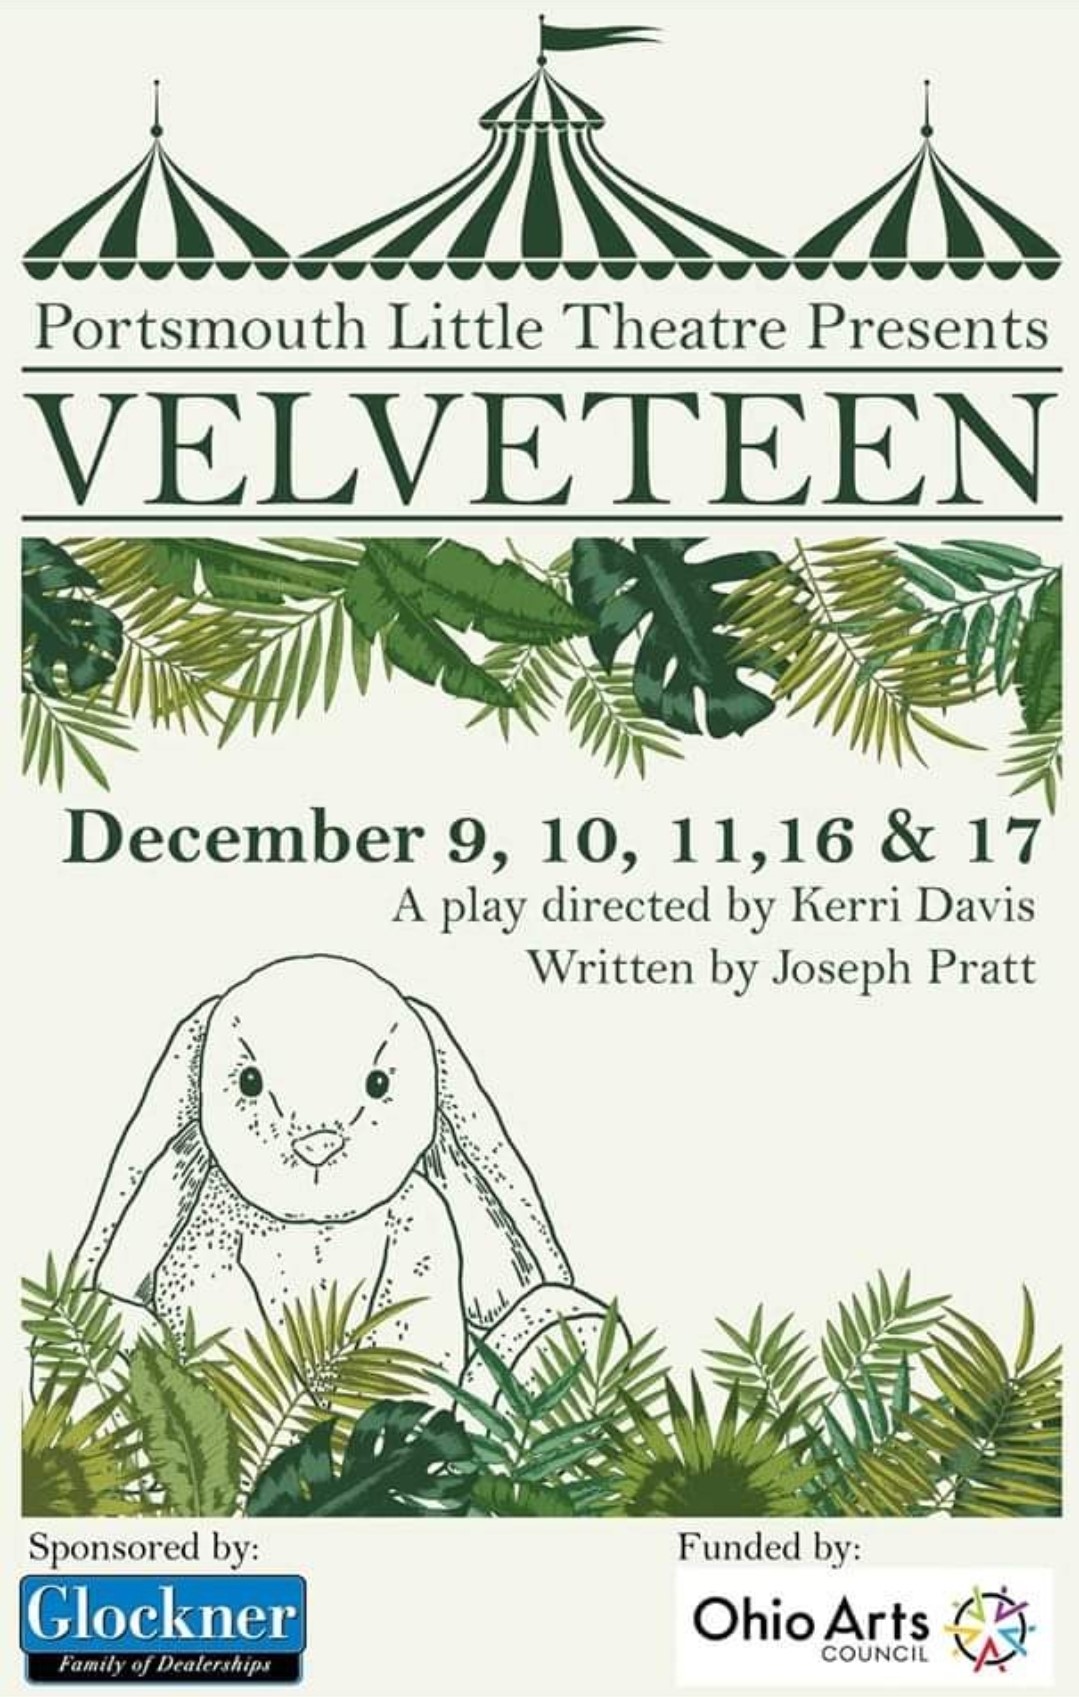 Velveteen  on dic. 09, 19:30@Portsmouth Little Theatre - Elegir asientoCompra entradas y obtén información enPortsmouth Little Theatre 